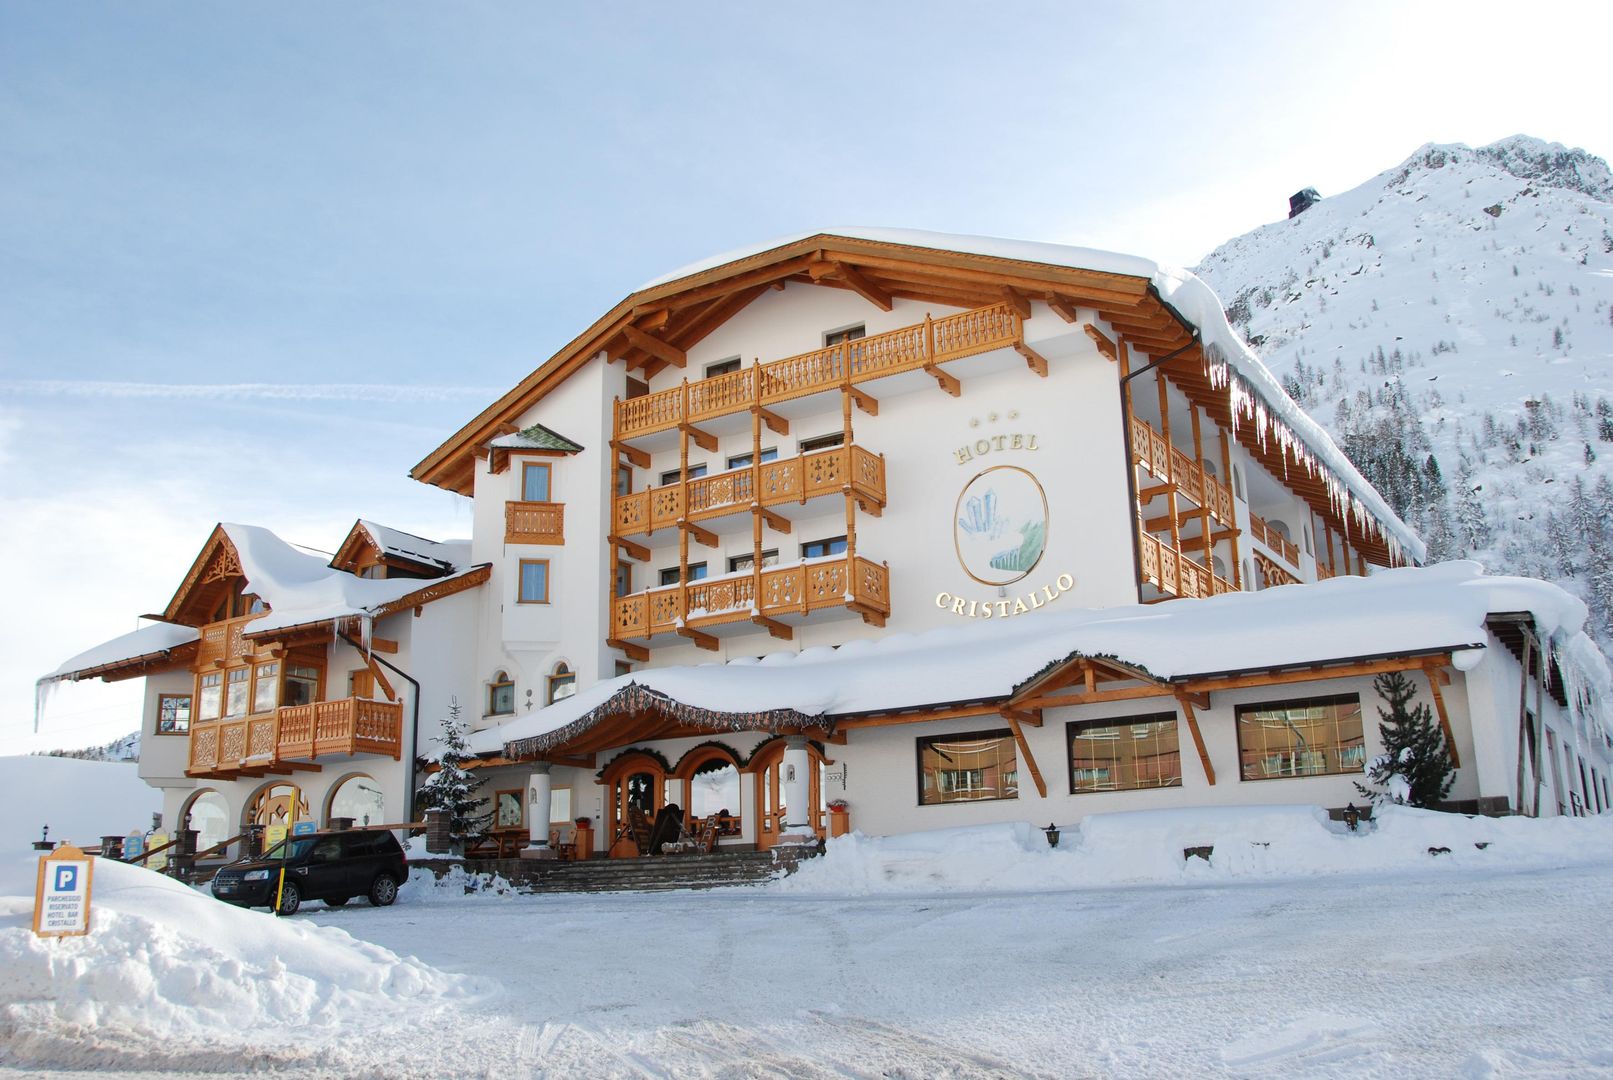 Meer info over Hotel Cristallo  bij Wintertrex